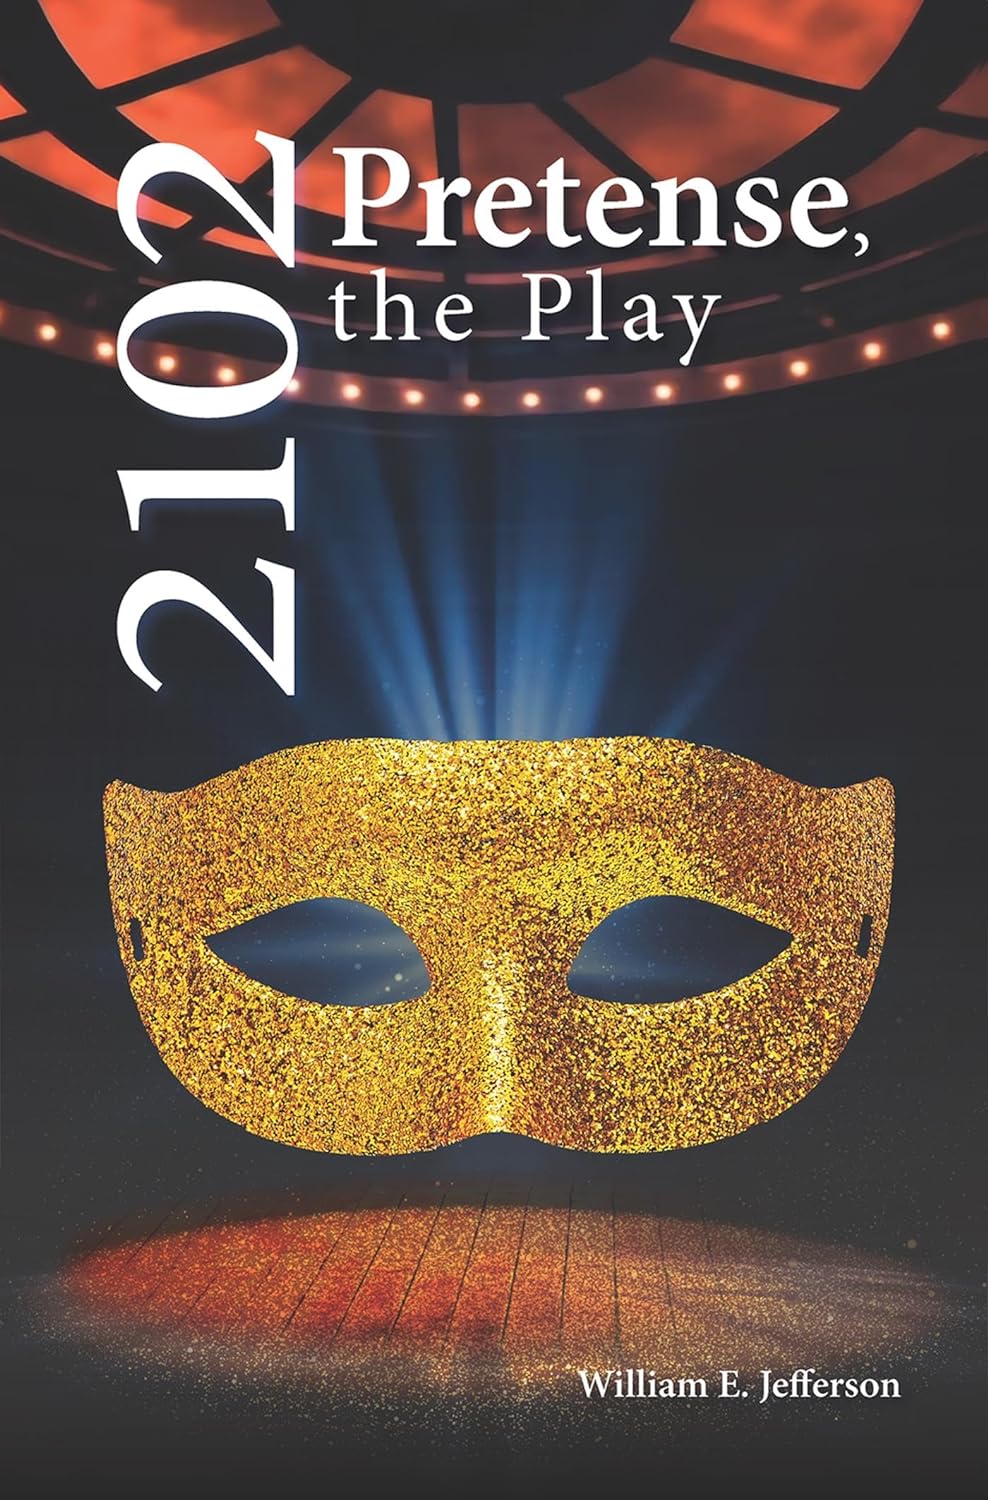 2102: Pretense, the Play by William E. Jefferson